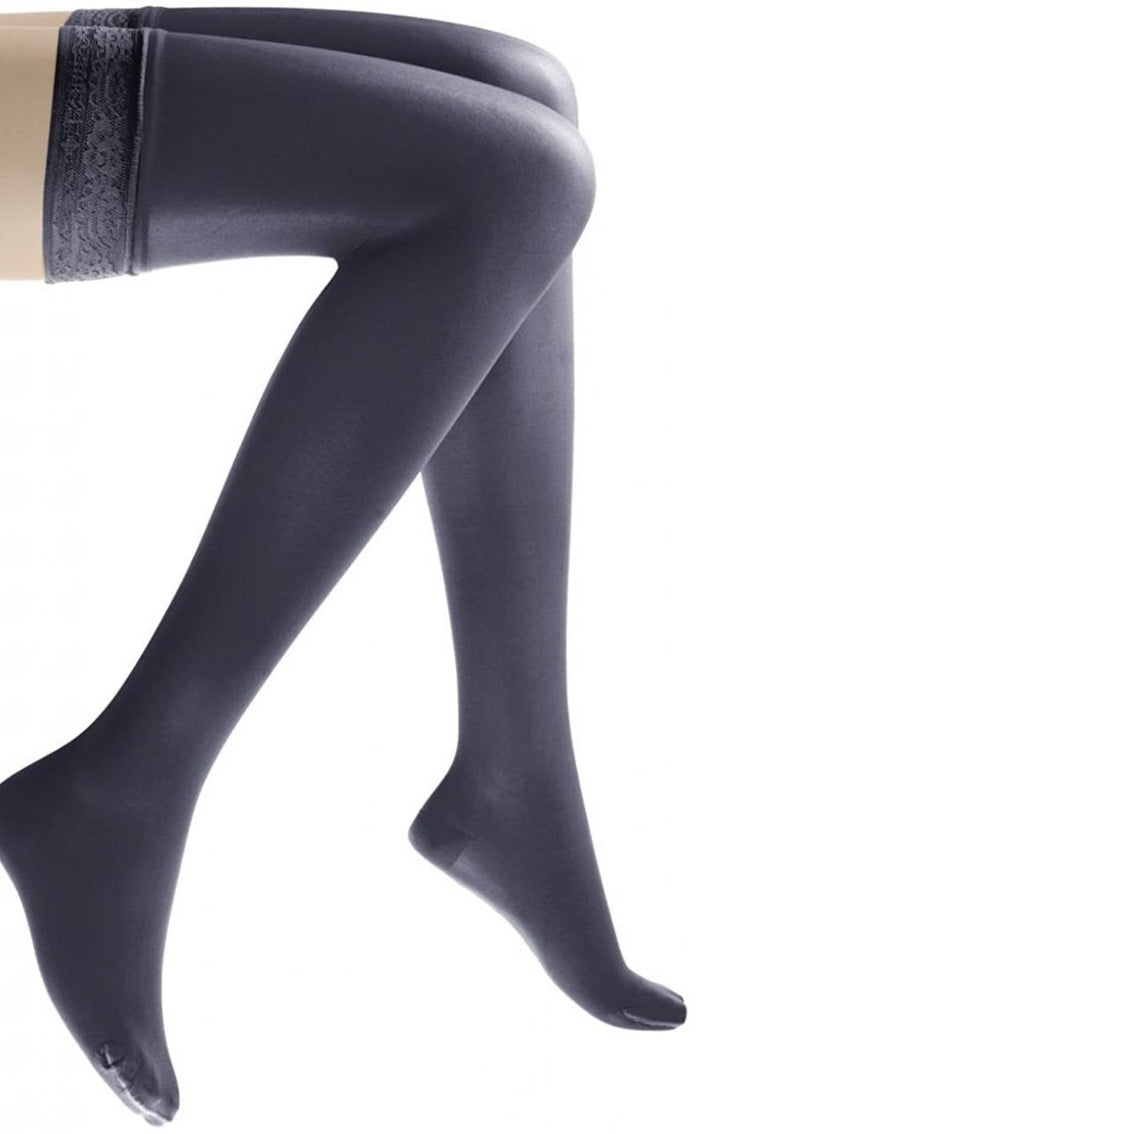 FUTURO™ Ultra Sheer Pantyhose for Women (French Cut)